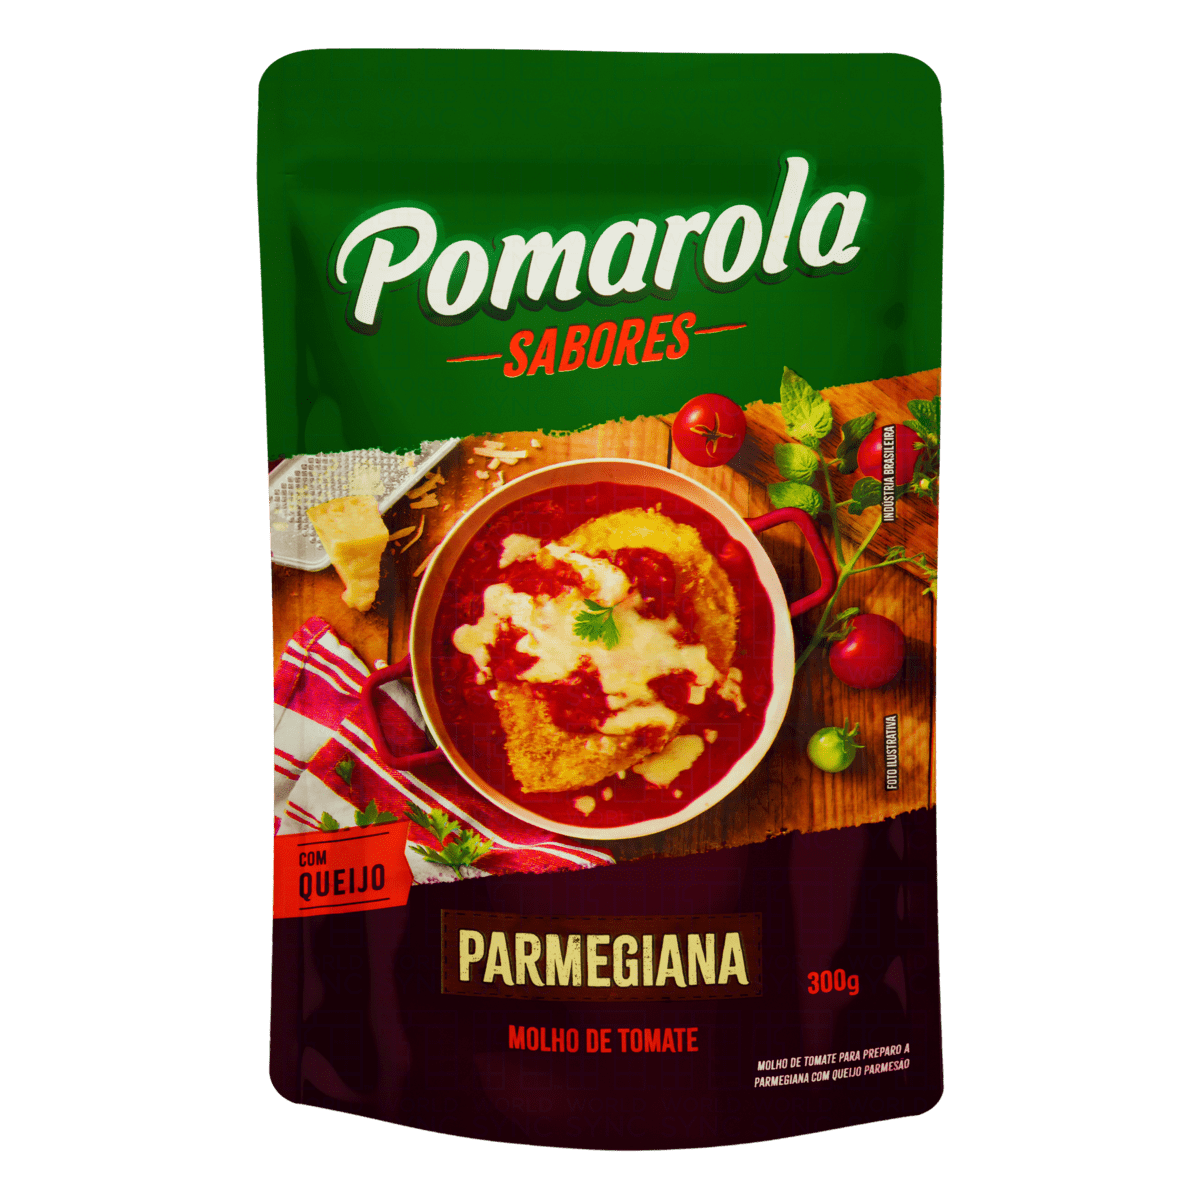 POMAROLA - Molho de tomate a parmegiana - 300g - VENDA FINAL - EXPIRADO ou PERTO DE EXPIRAR